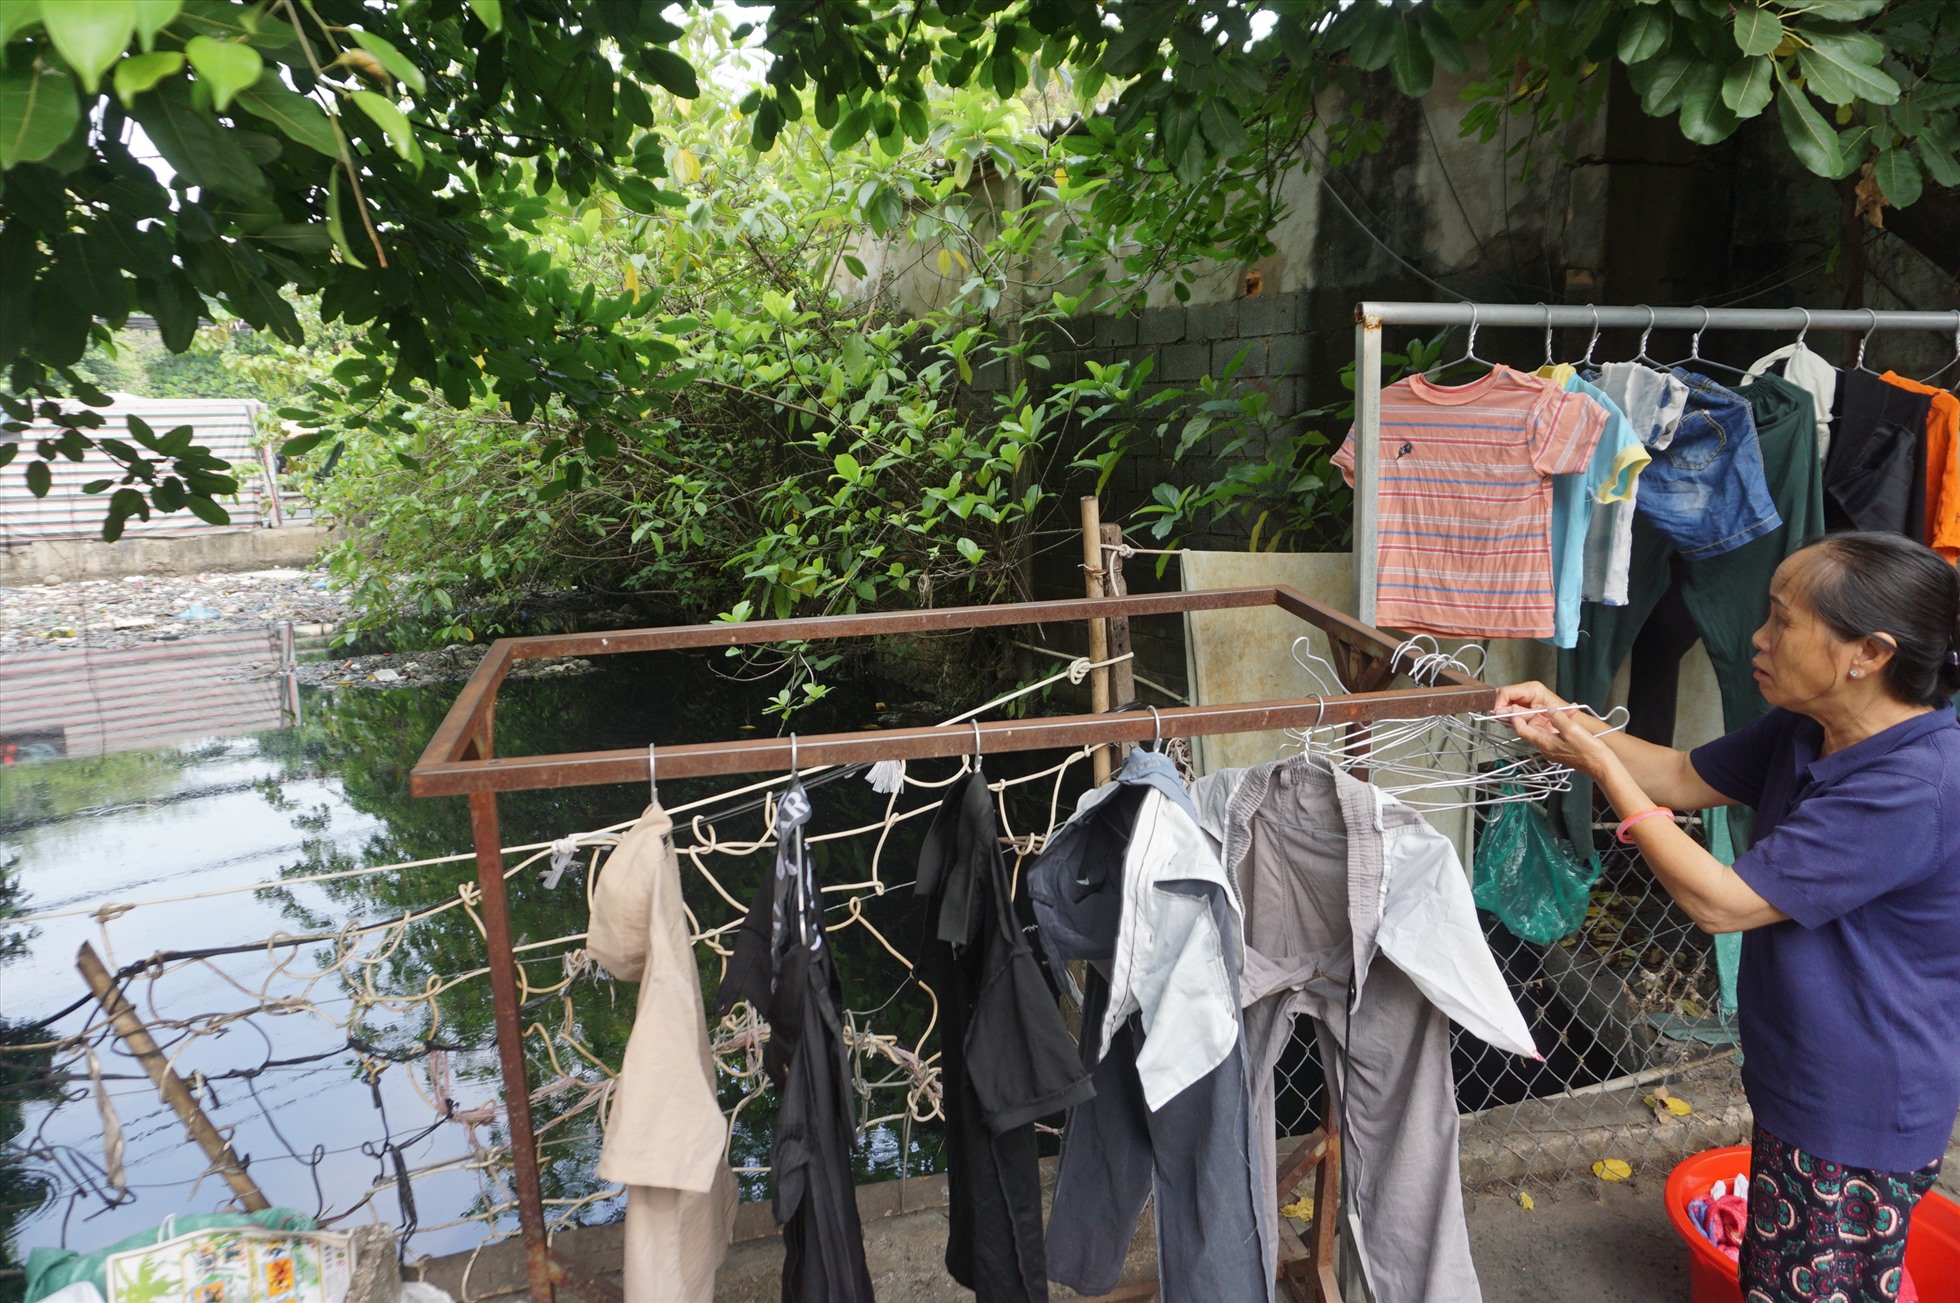 Bà Nguyễn Thị Lài (70 tuổi) sống bên bờ kênh cho biết, cách đây khoảng nửa tháng có nhóm bạn trẻ vớt sạch rác dưới kênh nhưng sau đó rác lại từ các nơi đổ về.